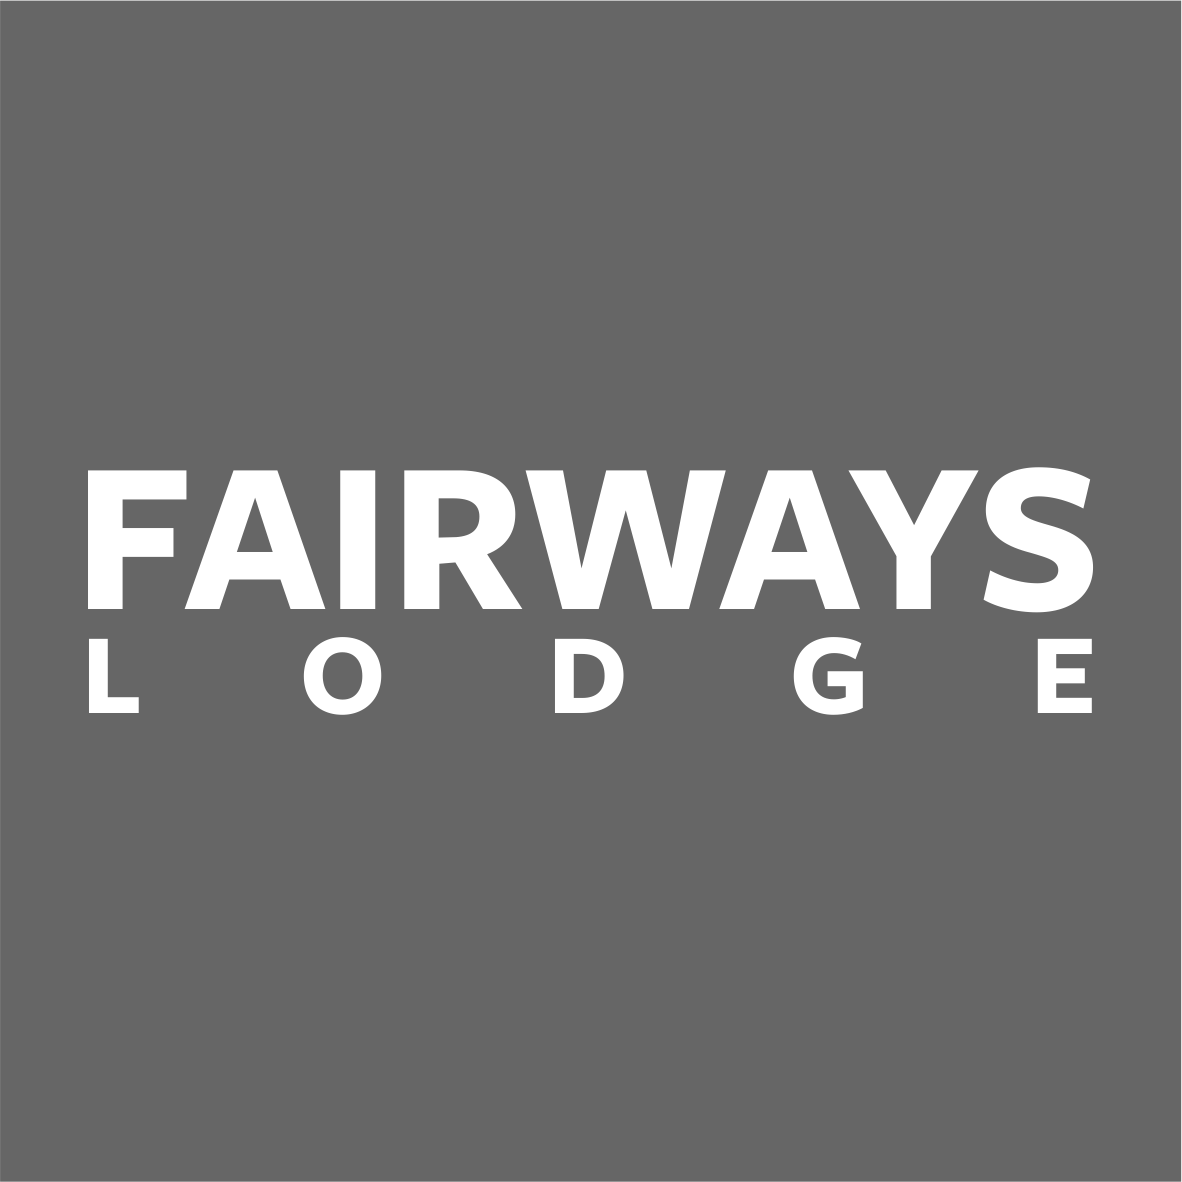 Fairways Lodge Squash